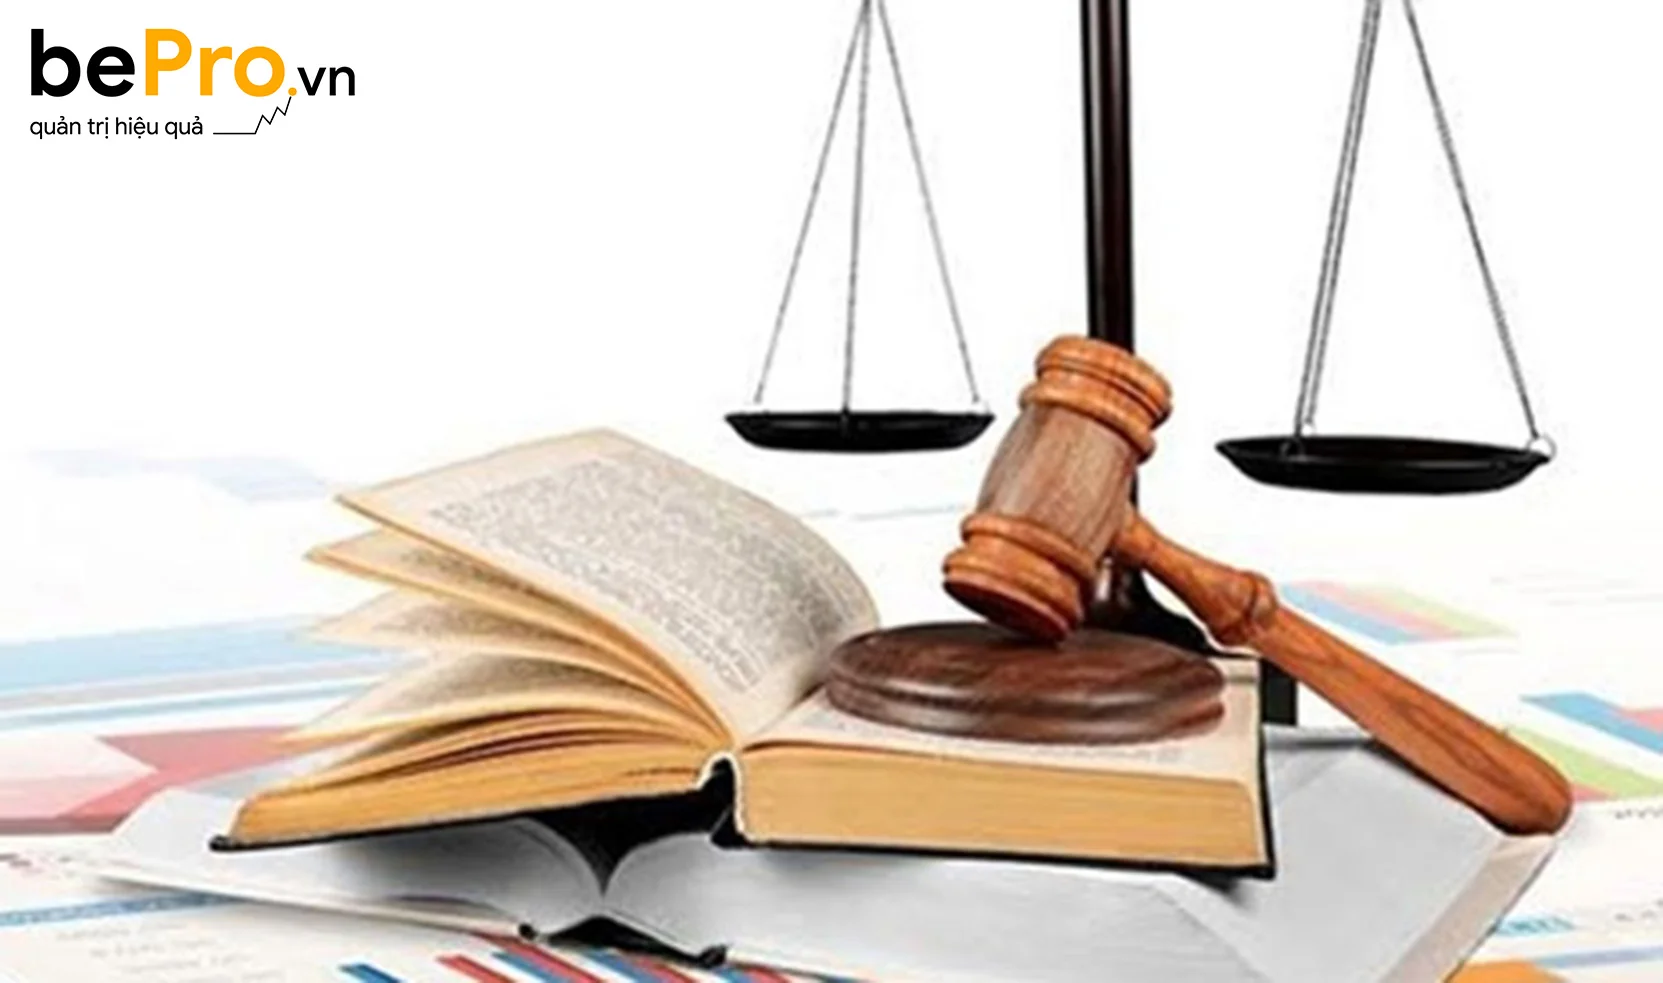 Luật hành chính là gì và nội dung cơ bản của luật hành chính